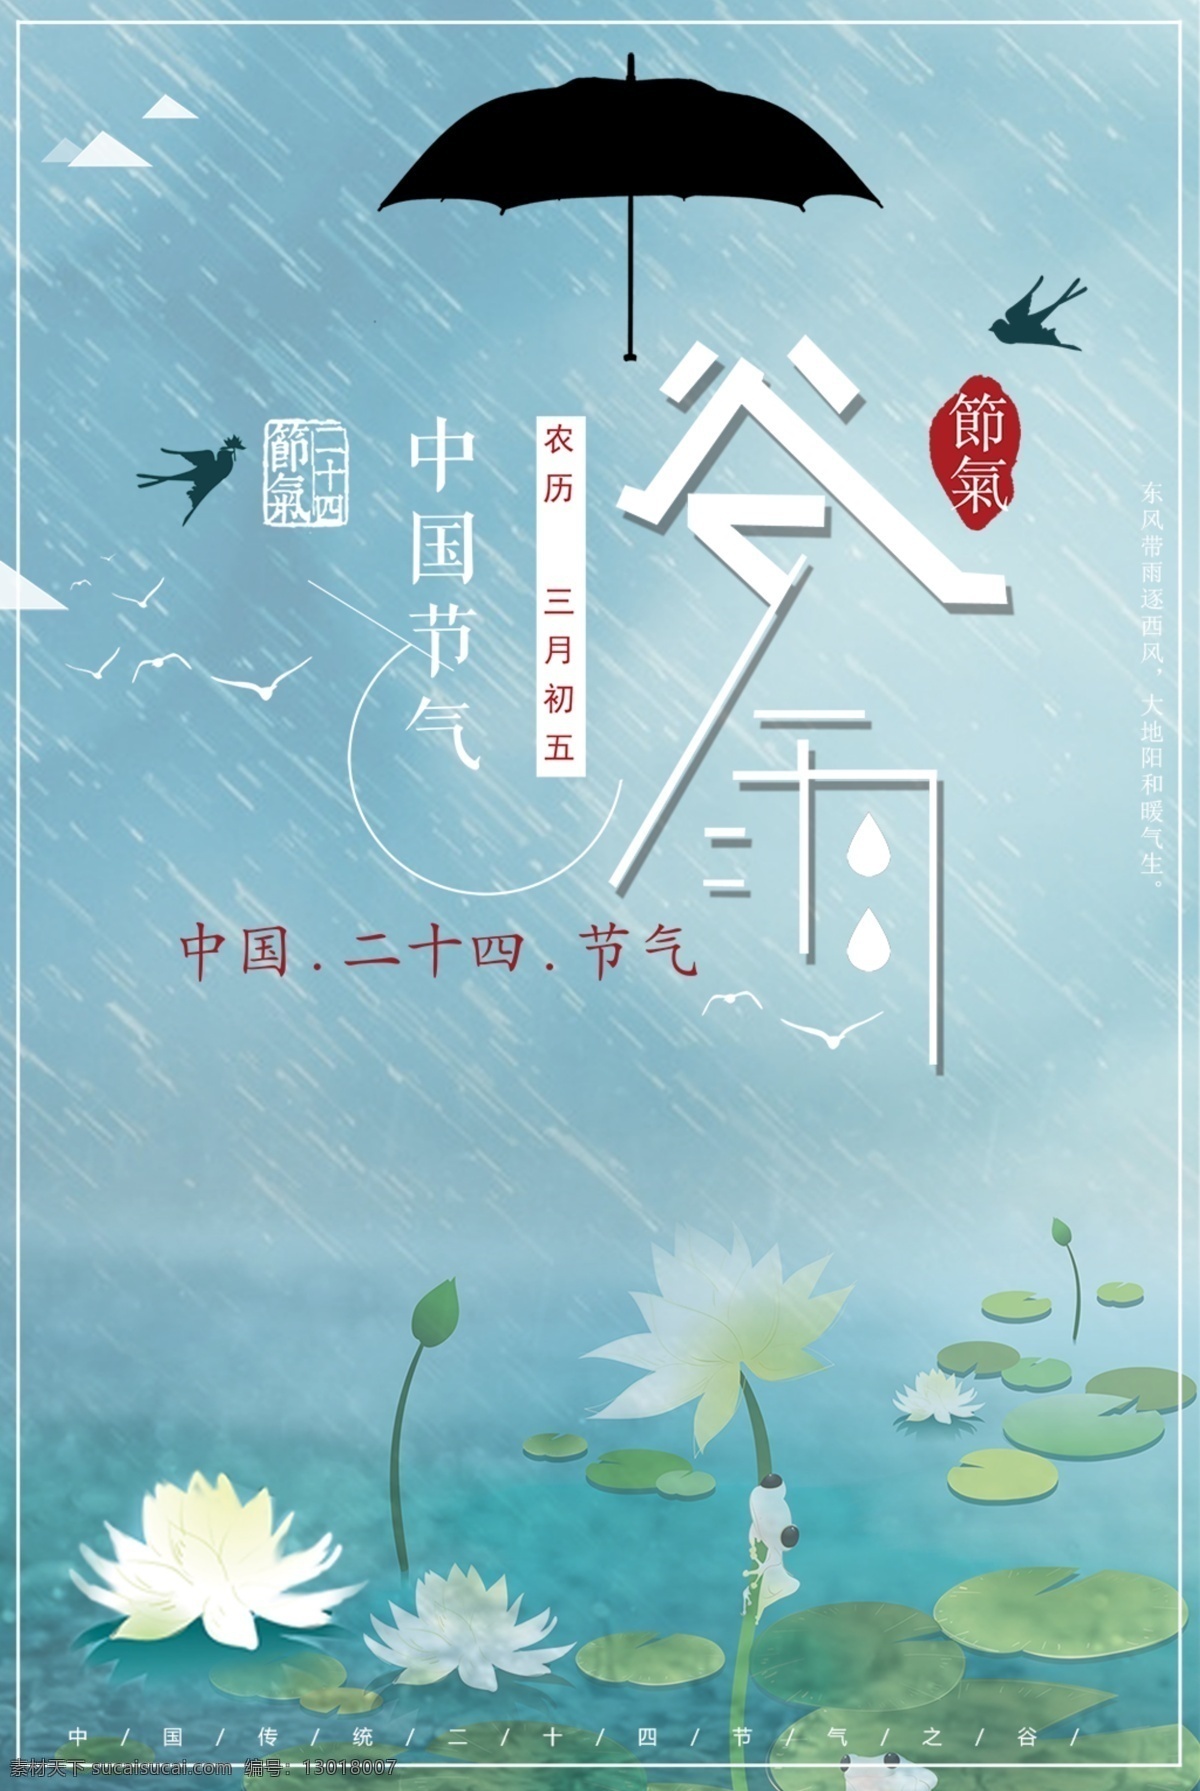 中国 风 节气 谷雨 海报 谷雨节气 传统文化 传统节日 中国节气 春天节 谷雨海报 谷雨天气